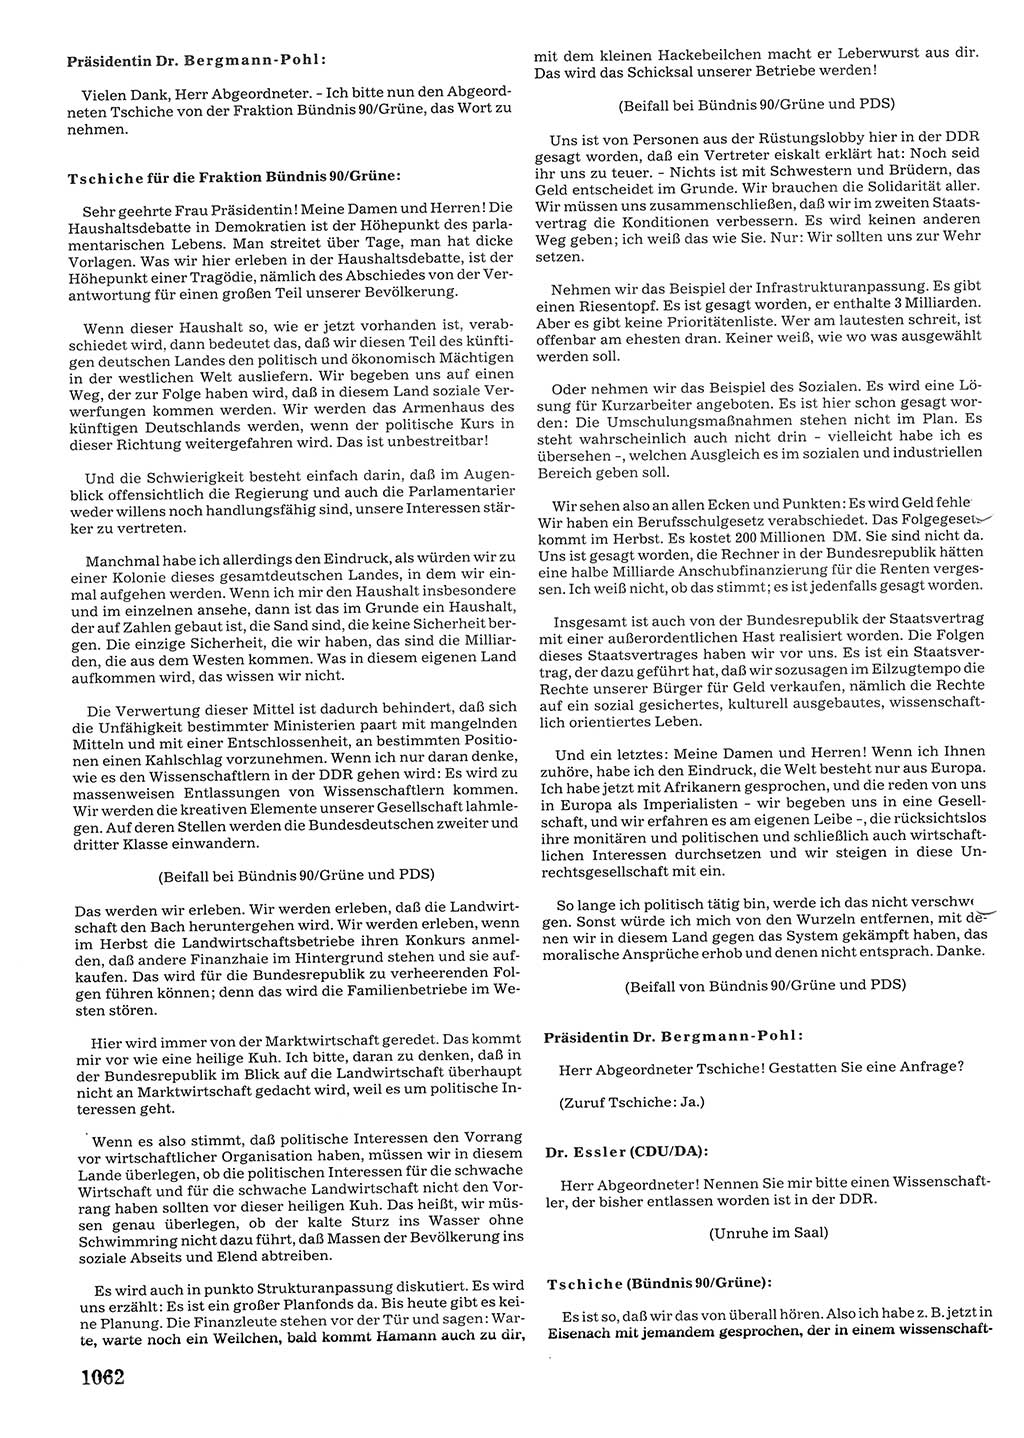 Tagungen der Volkskammer (VK) der Deutschen Demokratischen Republik (DDR), 10. Wahlperiode 1990, Seite 1062 (VK. DDR 10. WP. 1990, Prot. Tg. 1-38, 5.4.-2.10.1990, S. 1062)